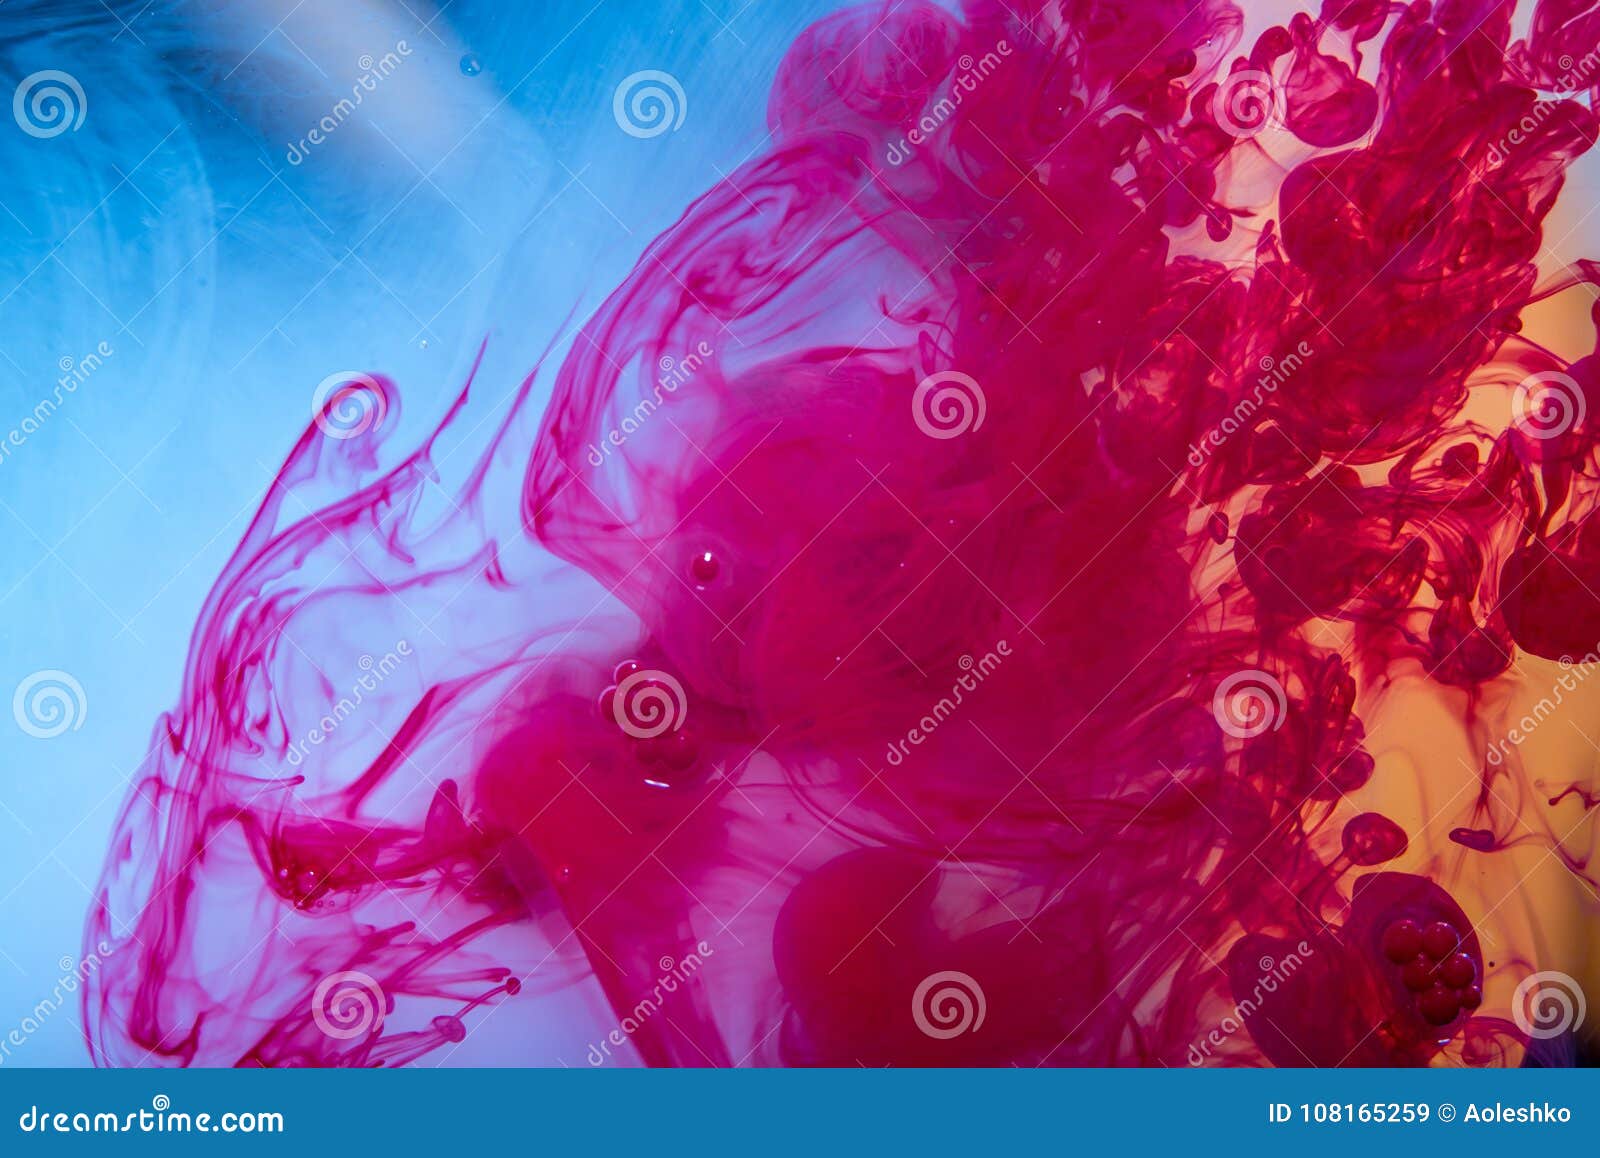 移动在水中的红色油漆漩涡喜欢在蓝色背景的烟 抽象背景概念